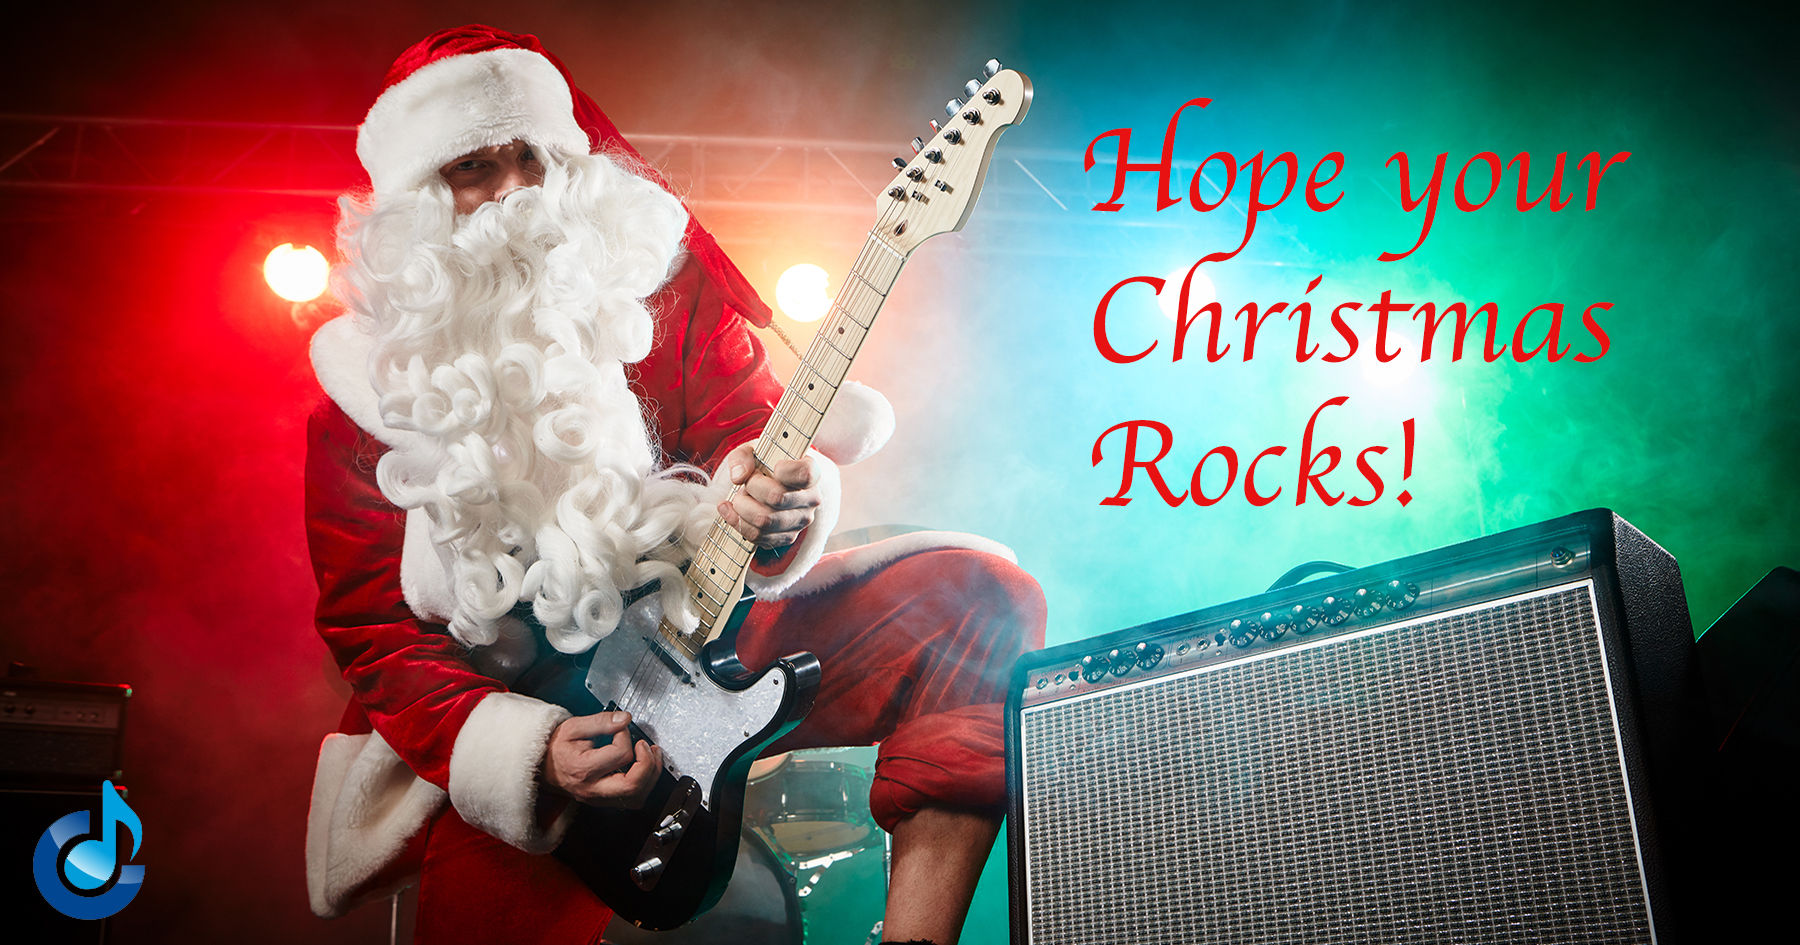 Hope your Christmas rocks